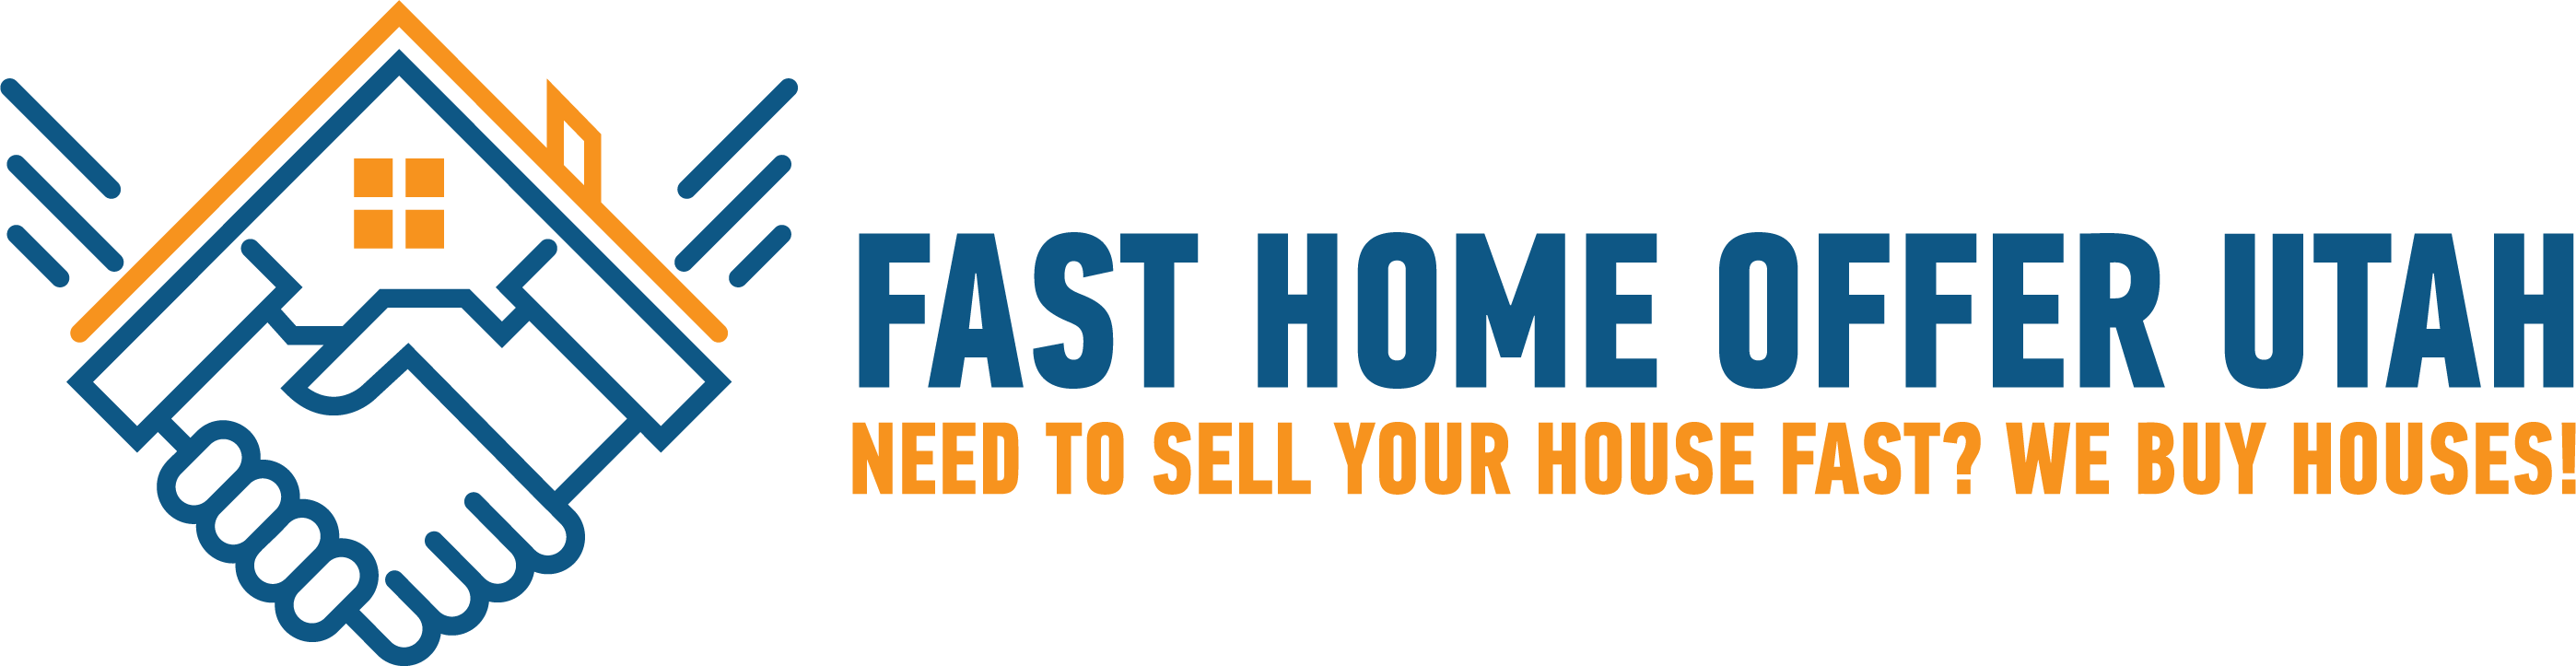 Fast Home Offer Utah logo